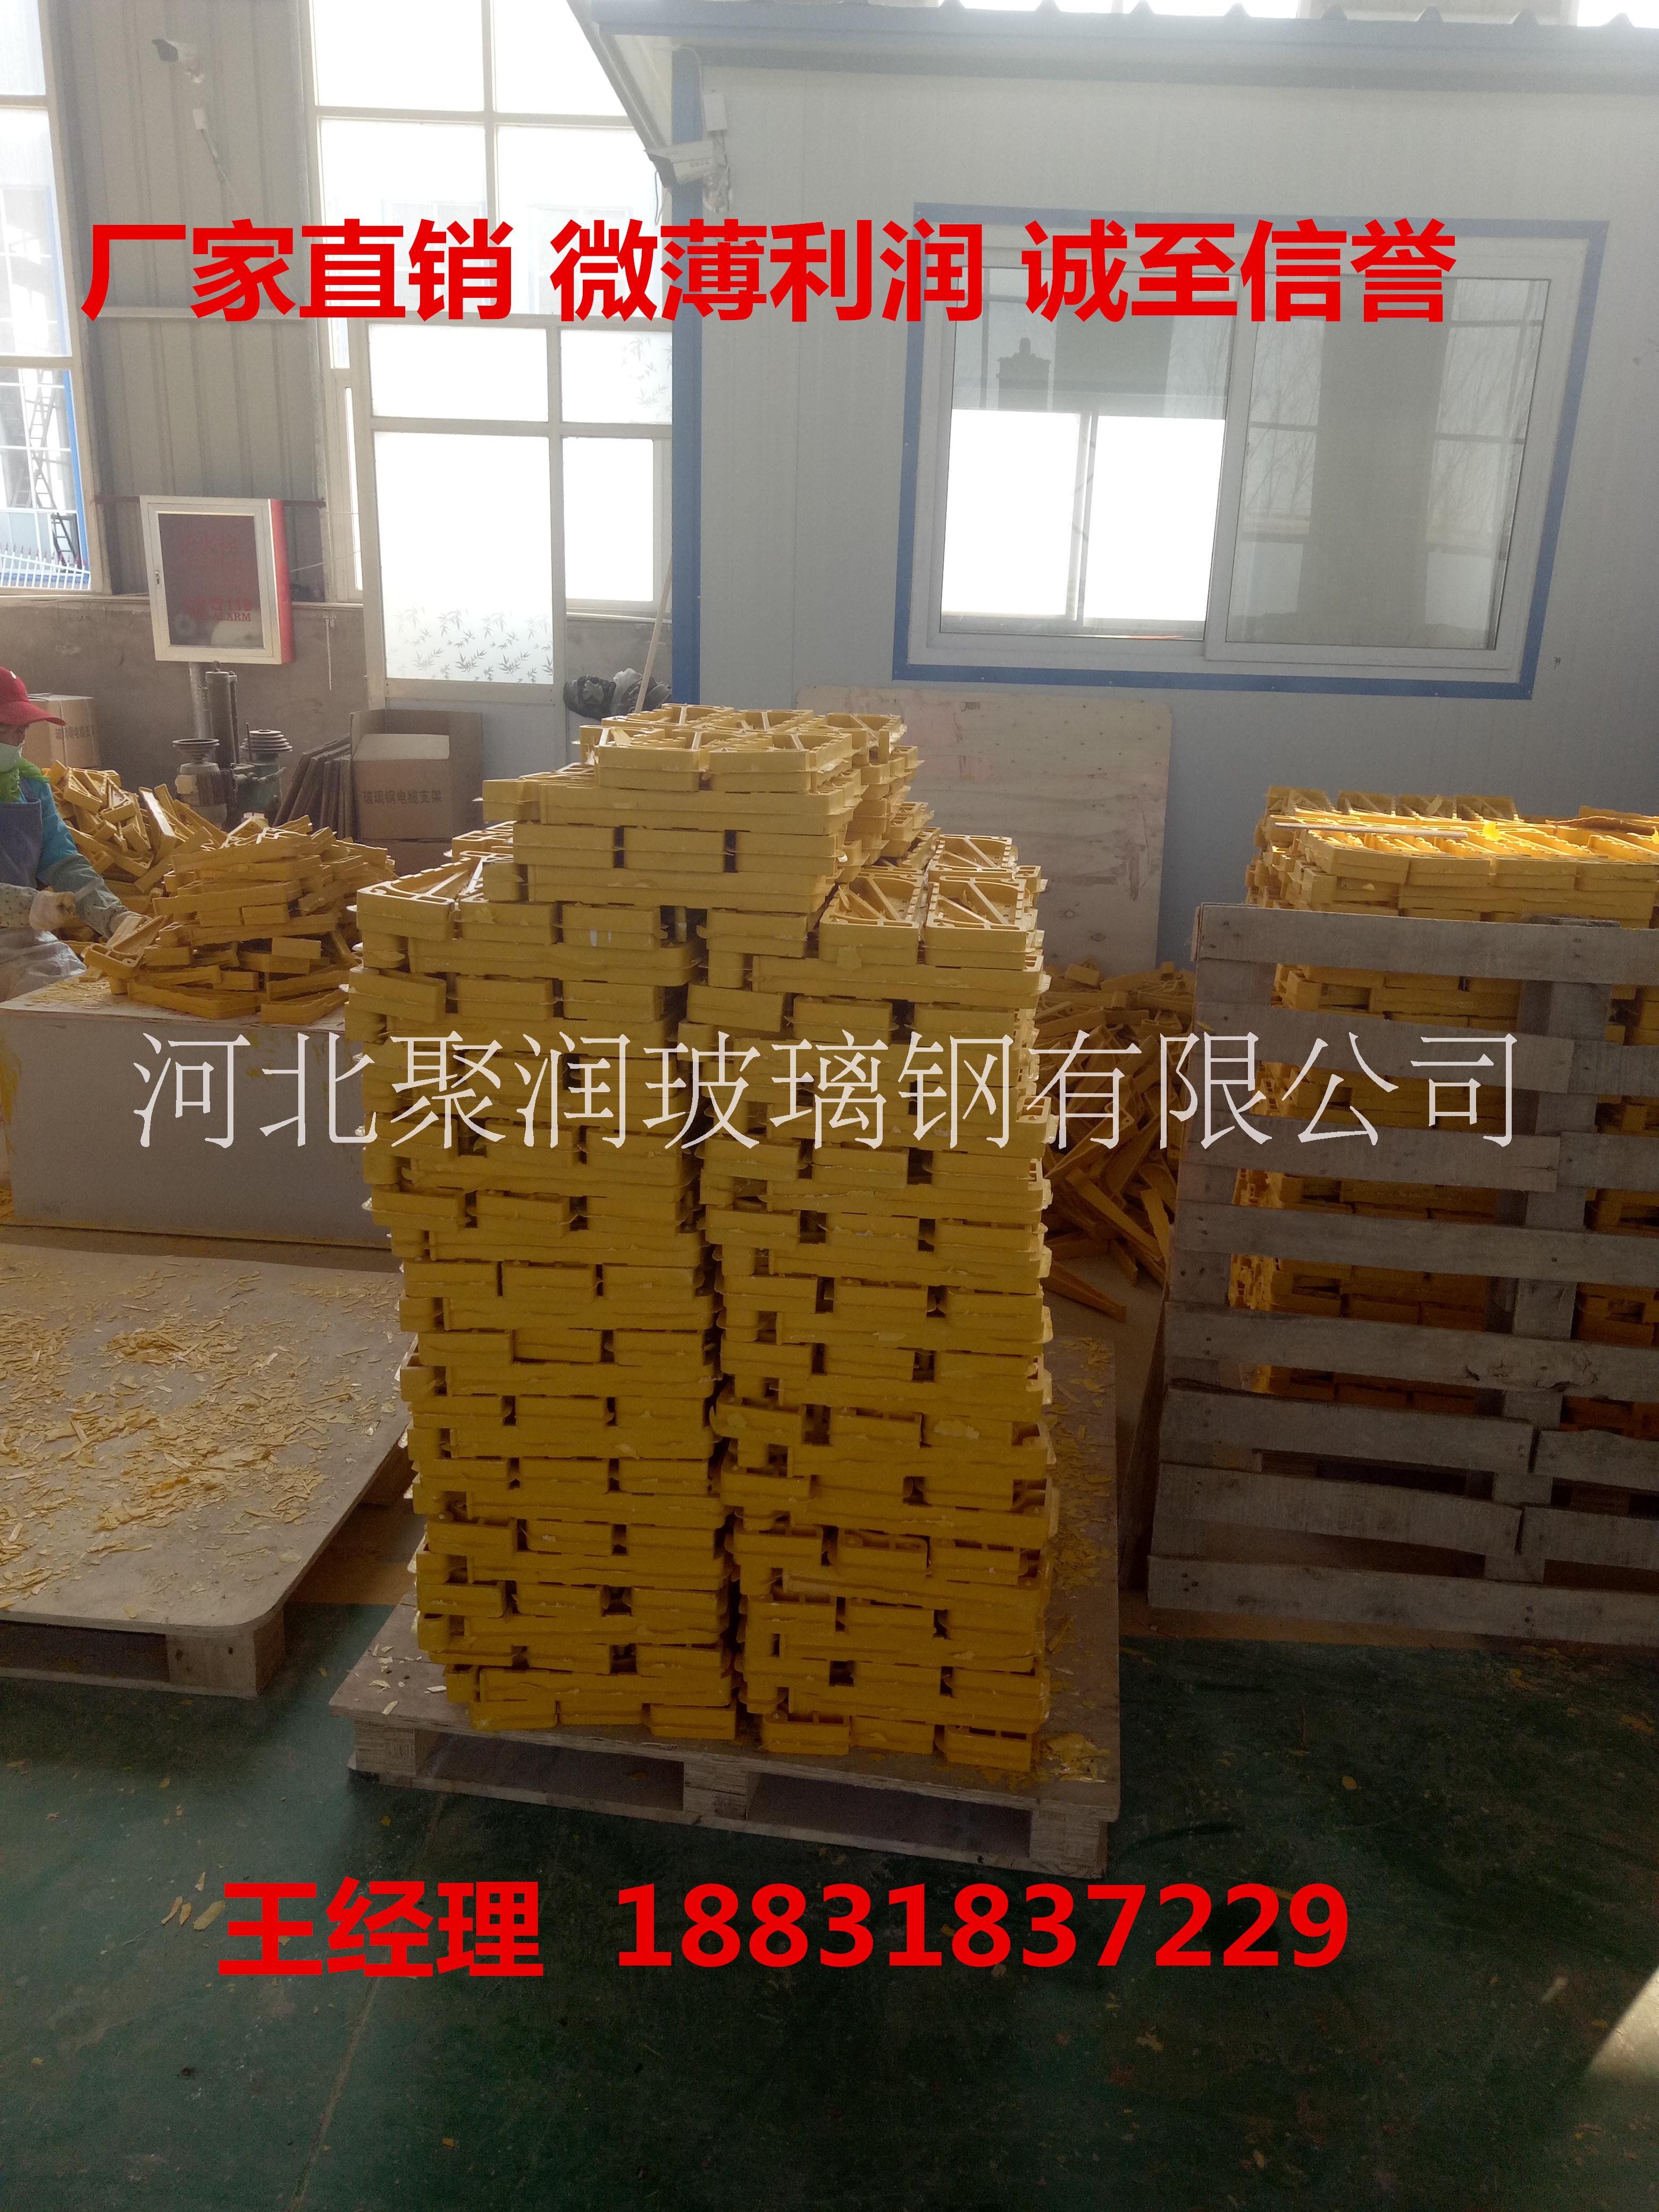 河北玻璃钢线缆支架厂家直销北京玻璃钢线缆支架